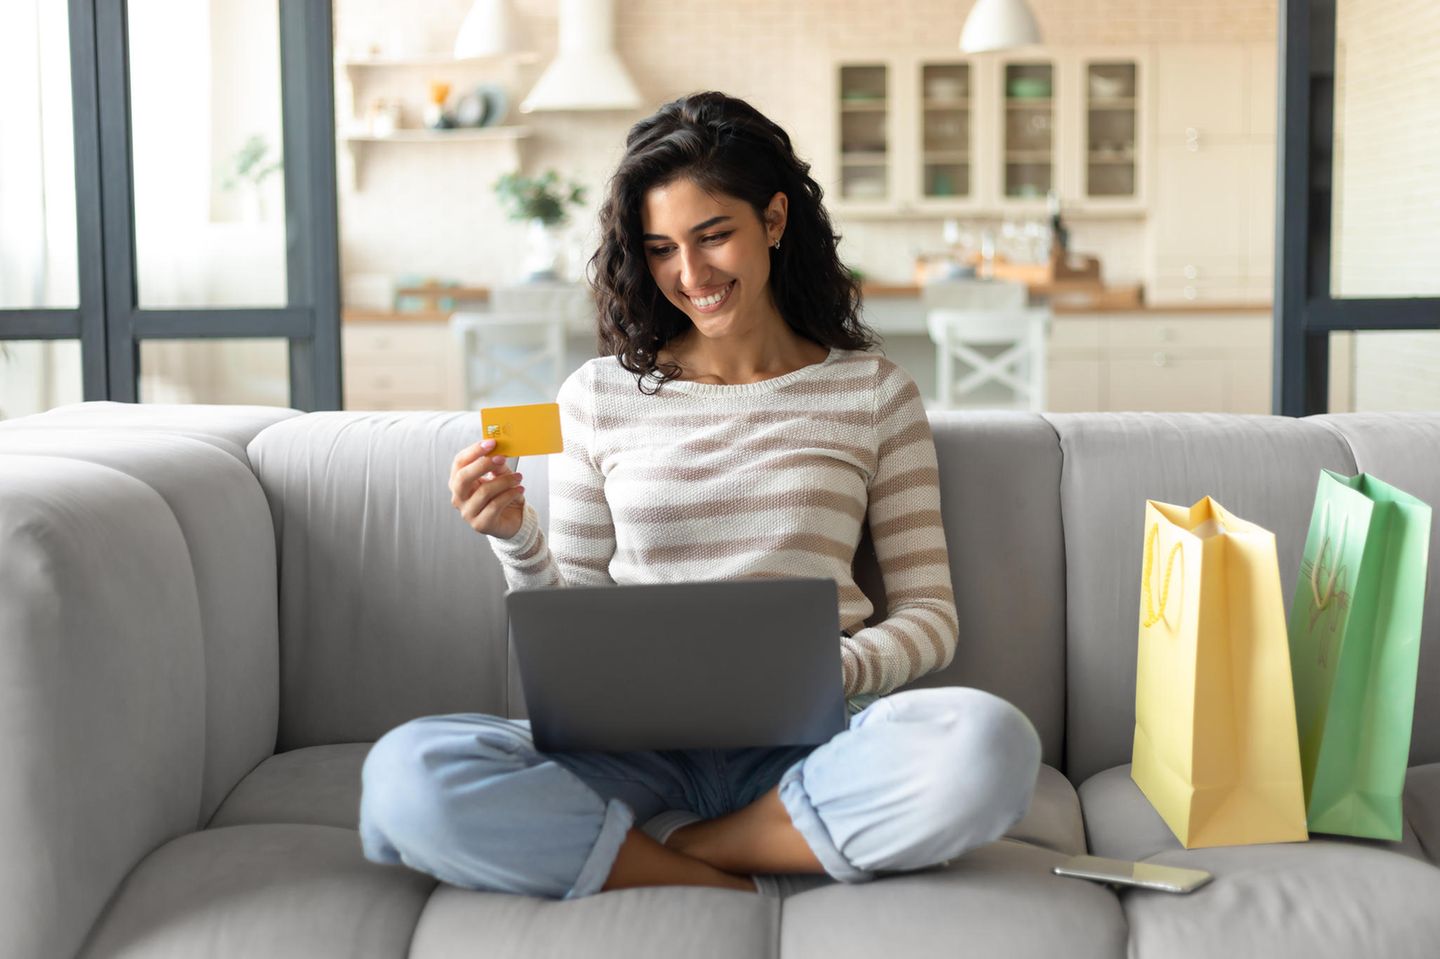 Amazon Prime Day: Lächelnde Frau mit Laptop und Kreditkarte